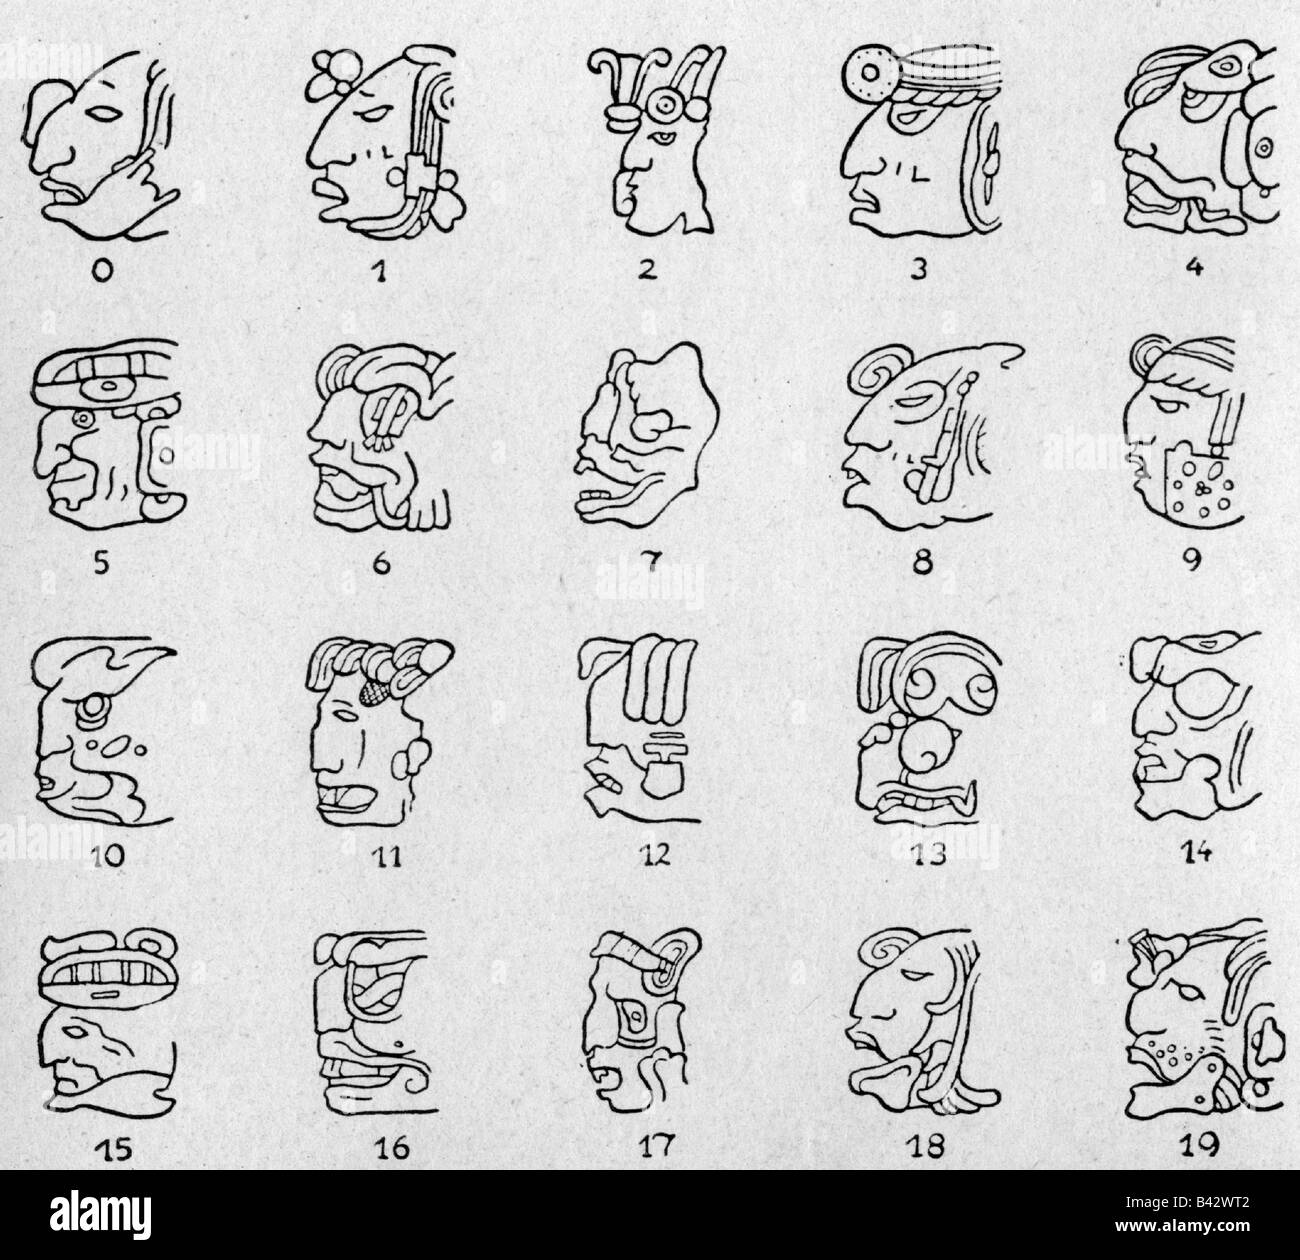 Schreiben, Zeichen, Maya-Hieroglyphen, Zahlen, 0-19, J.E. Thompson, "Civilization of the Mayas", 1927, mesoamerikaner, Schrift, Schrift, Schrift, Zahl, Figur, Stockfoto